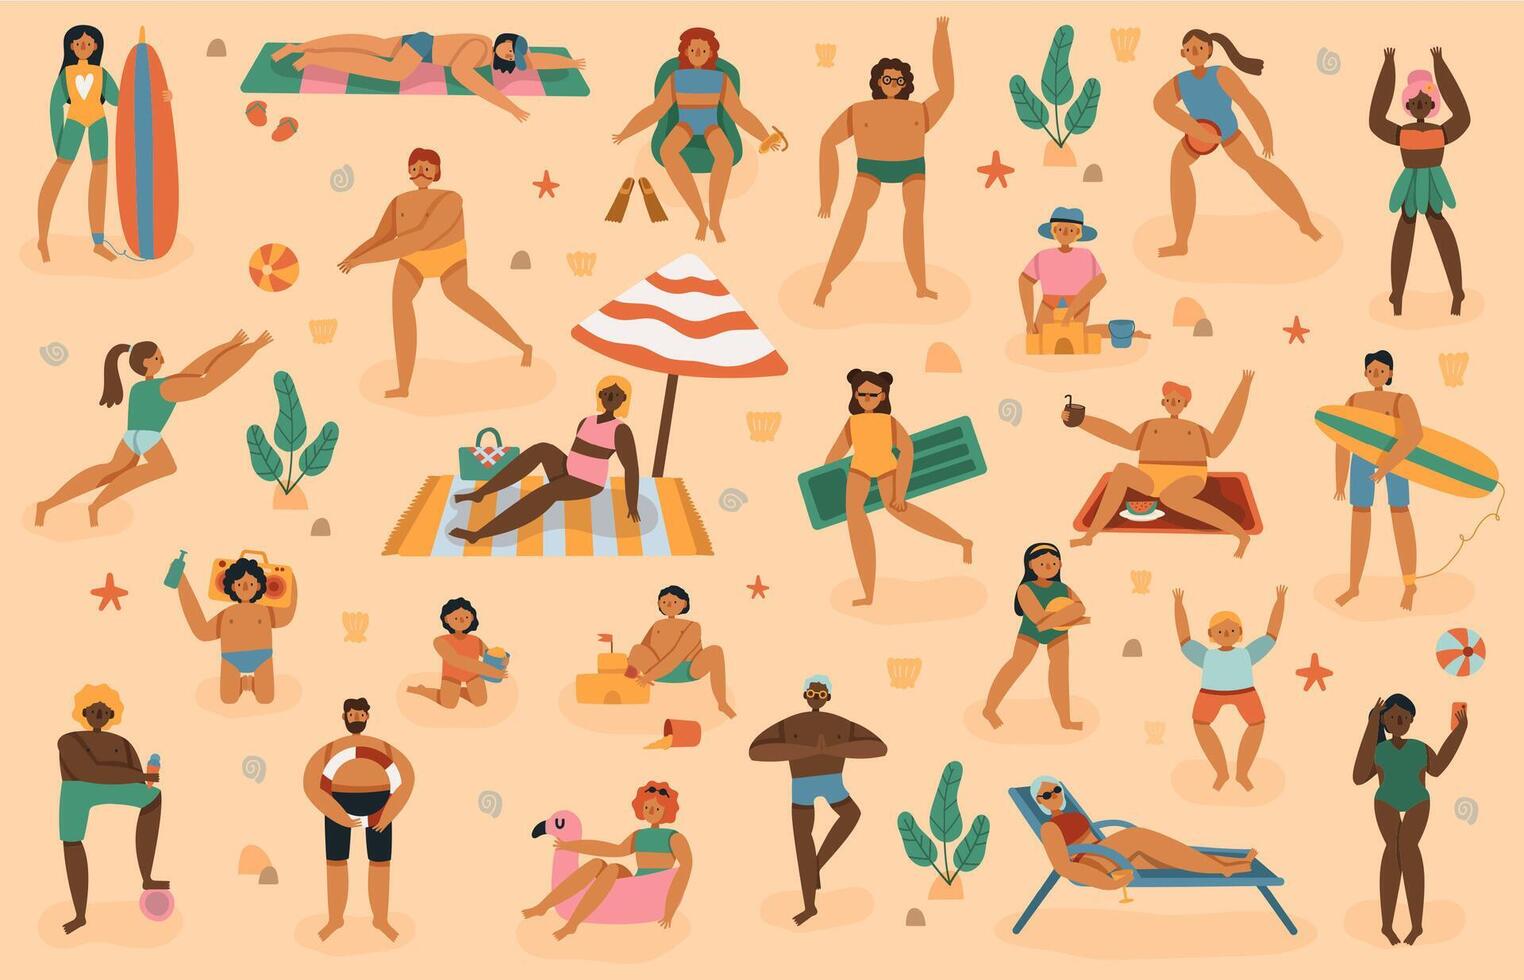 strand mensen. zomertijd zand strand vakantie, Mens, vrouw, familie met kinderen zonnen, Speel, aan het liegen Aan handdoeken zonnebaden vector illustratie reeks